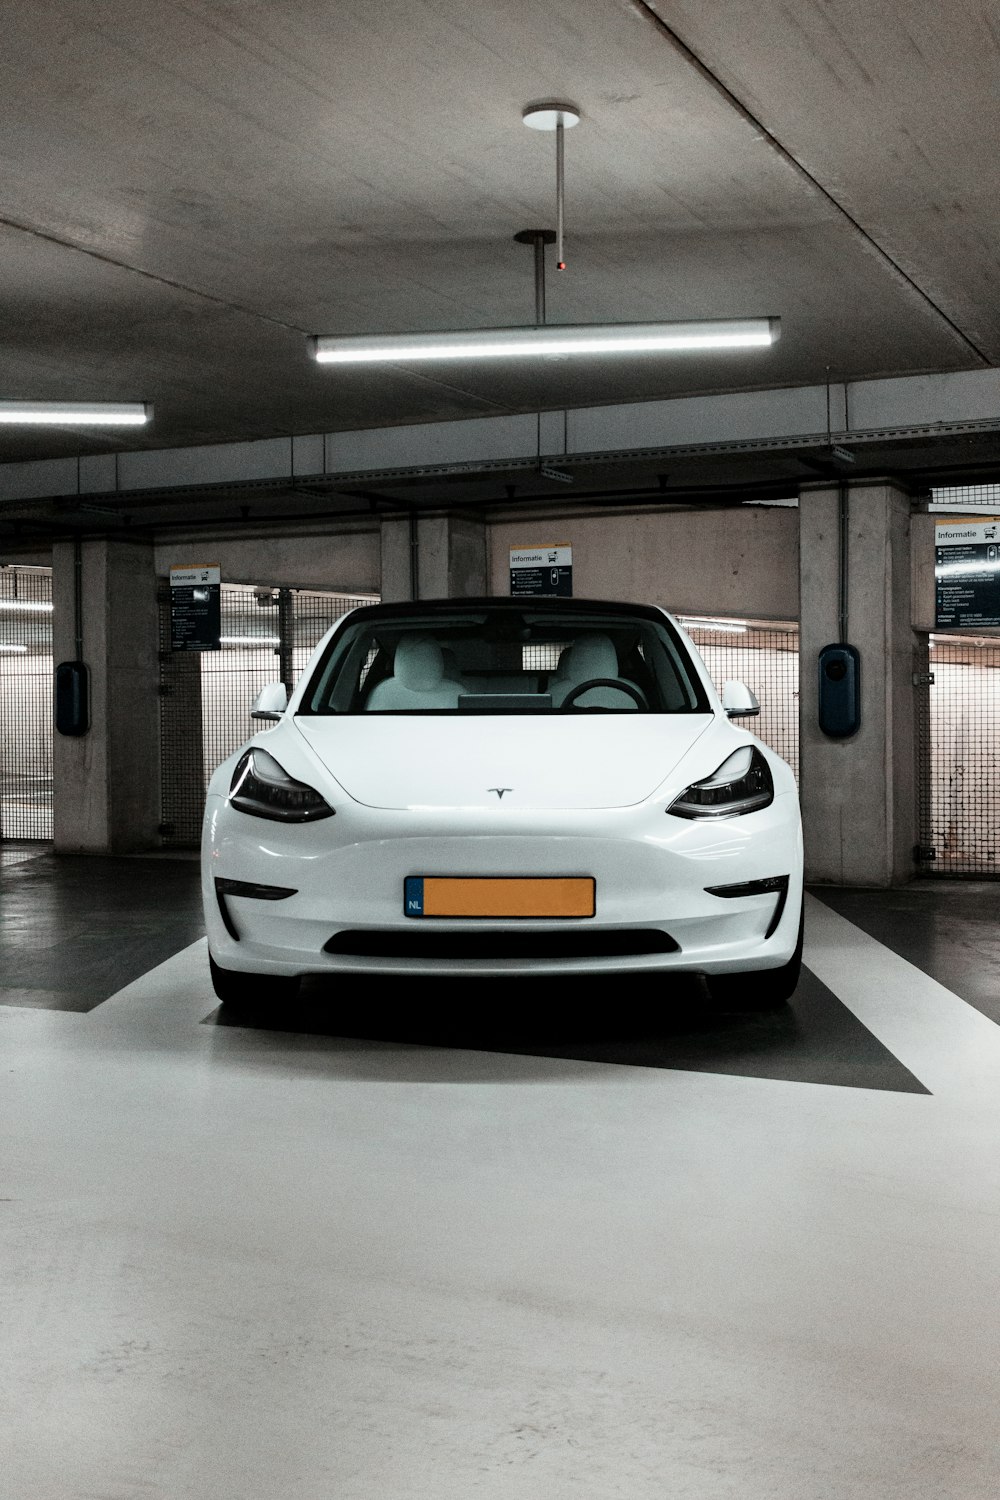 white McLaren 12C parking in garage area